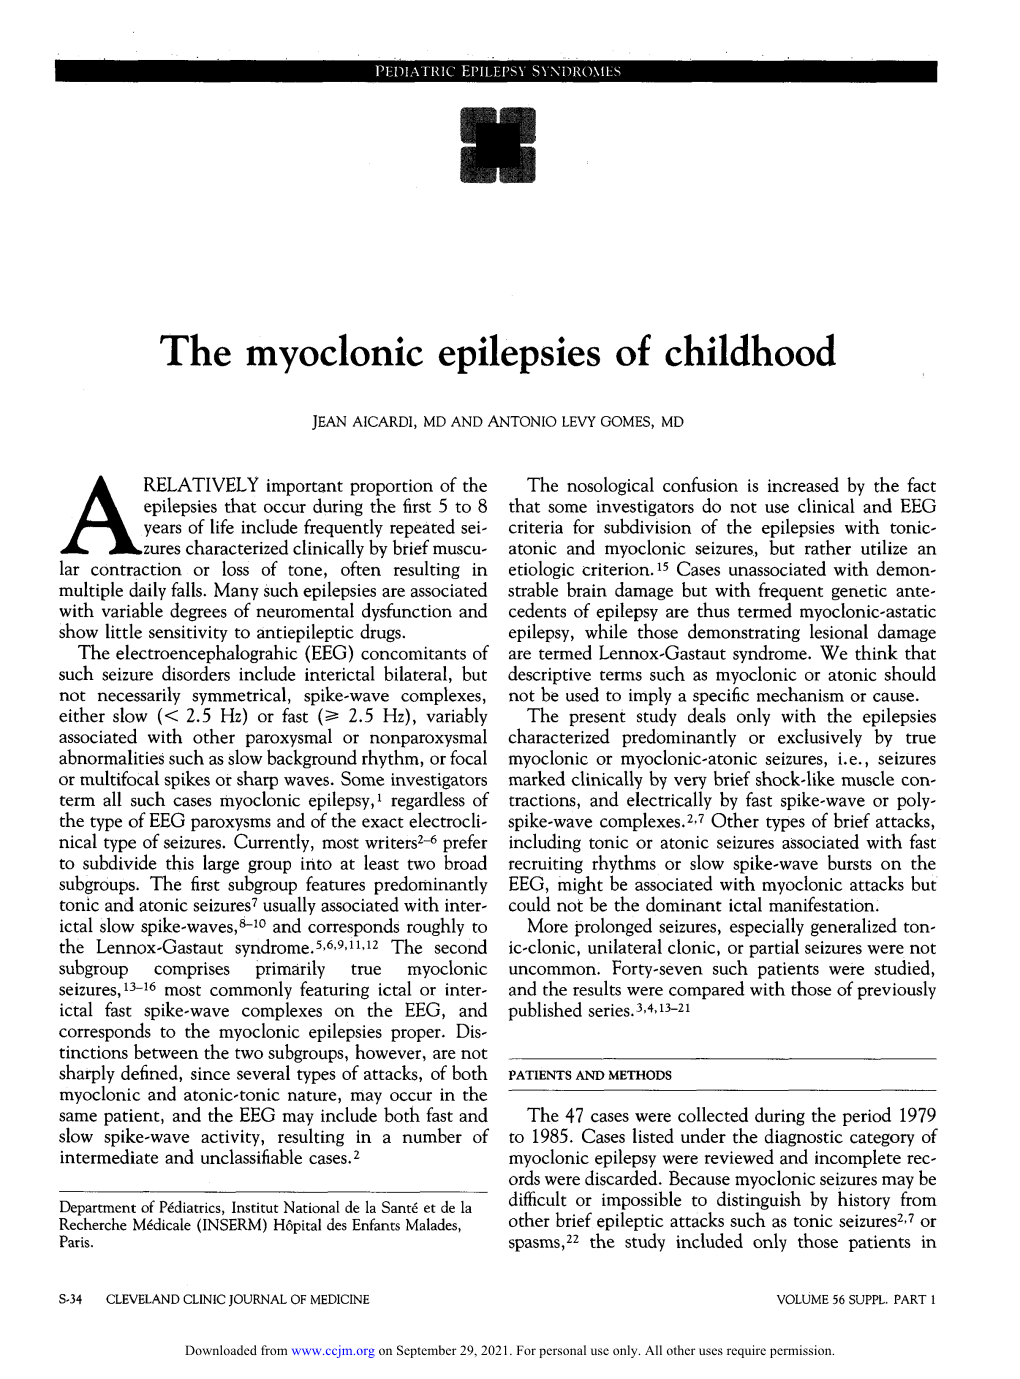 The Myoclonic Epilepsies of Childhood